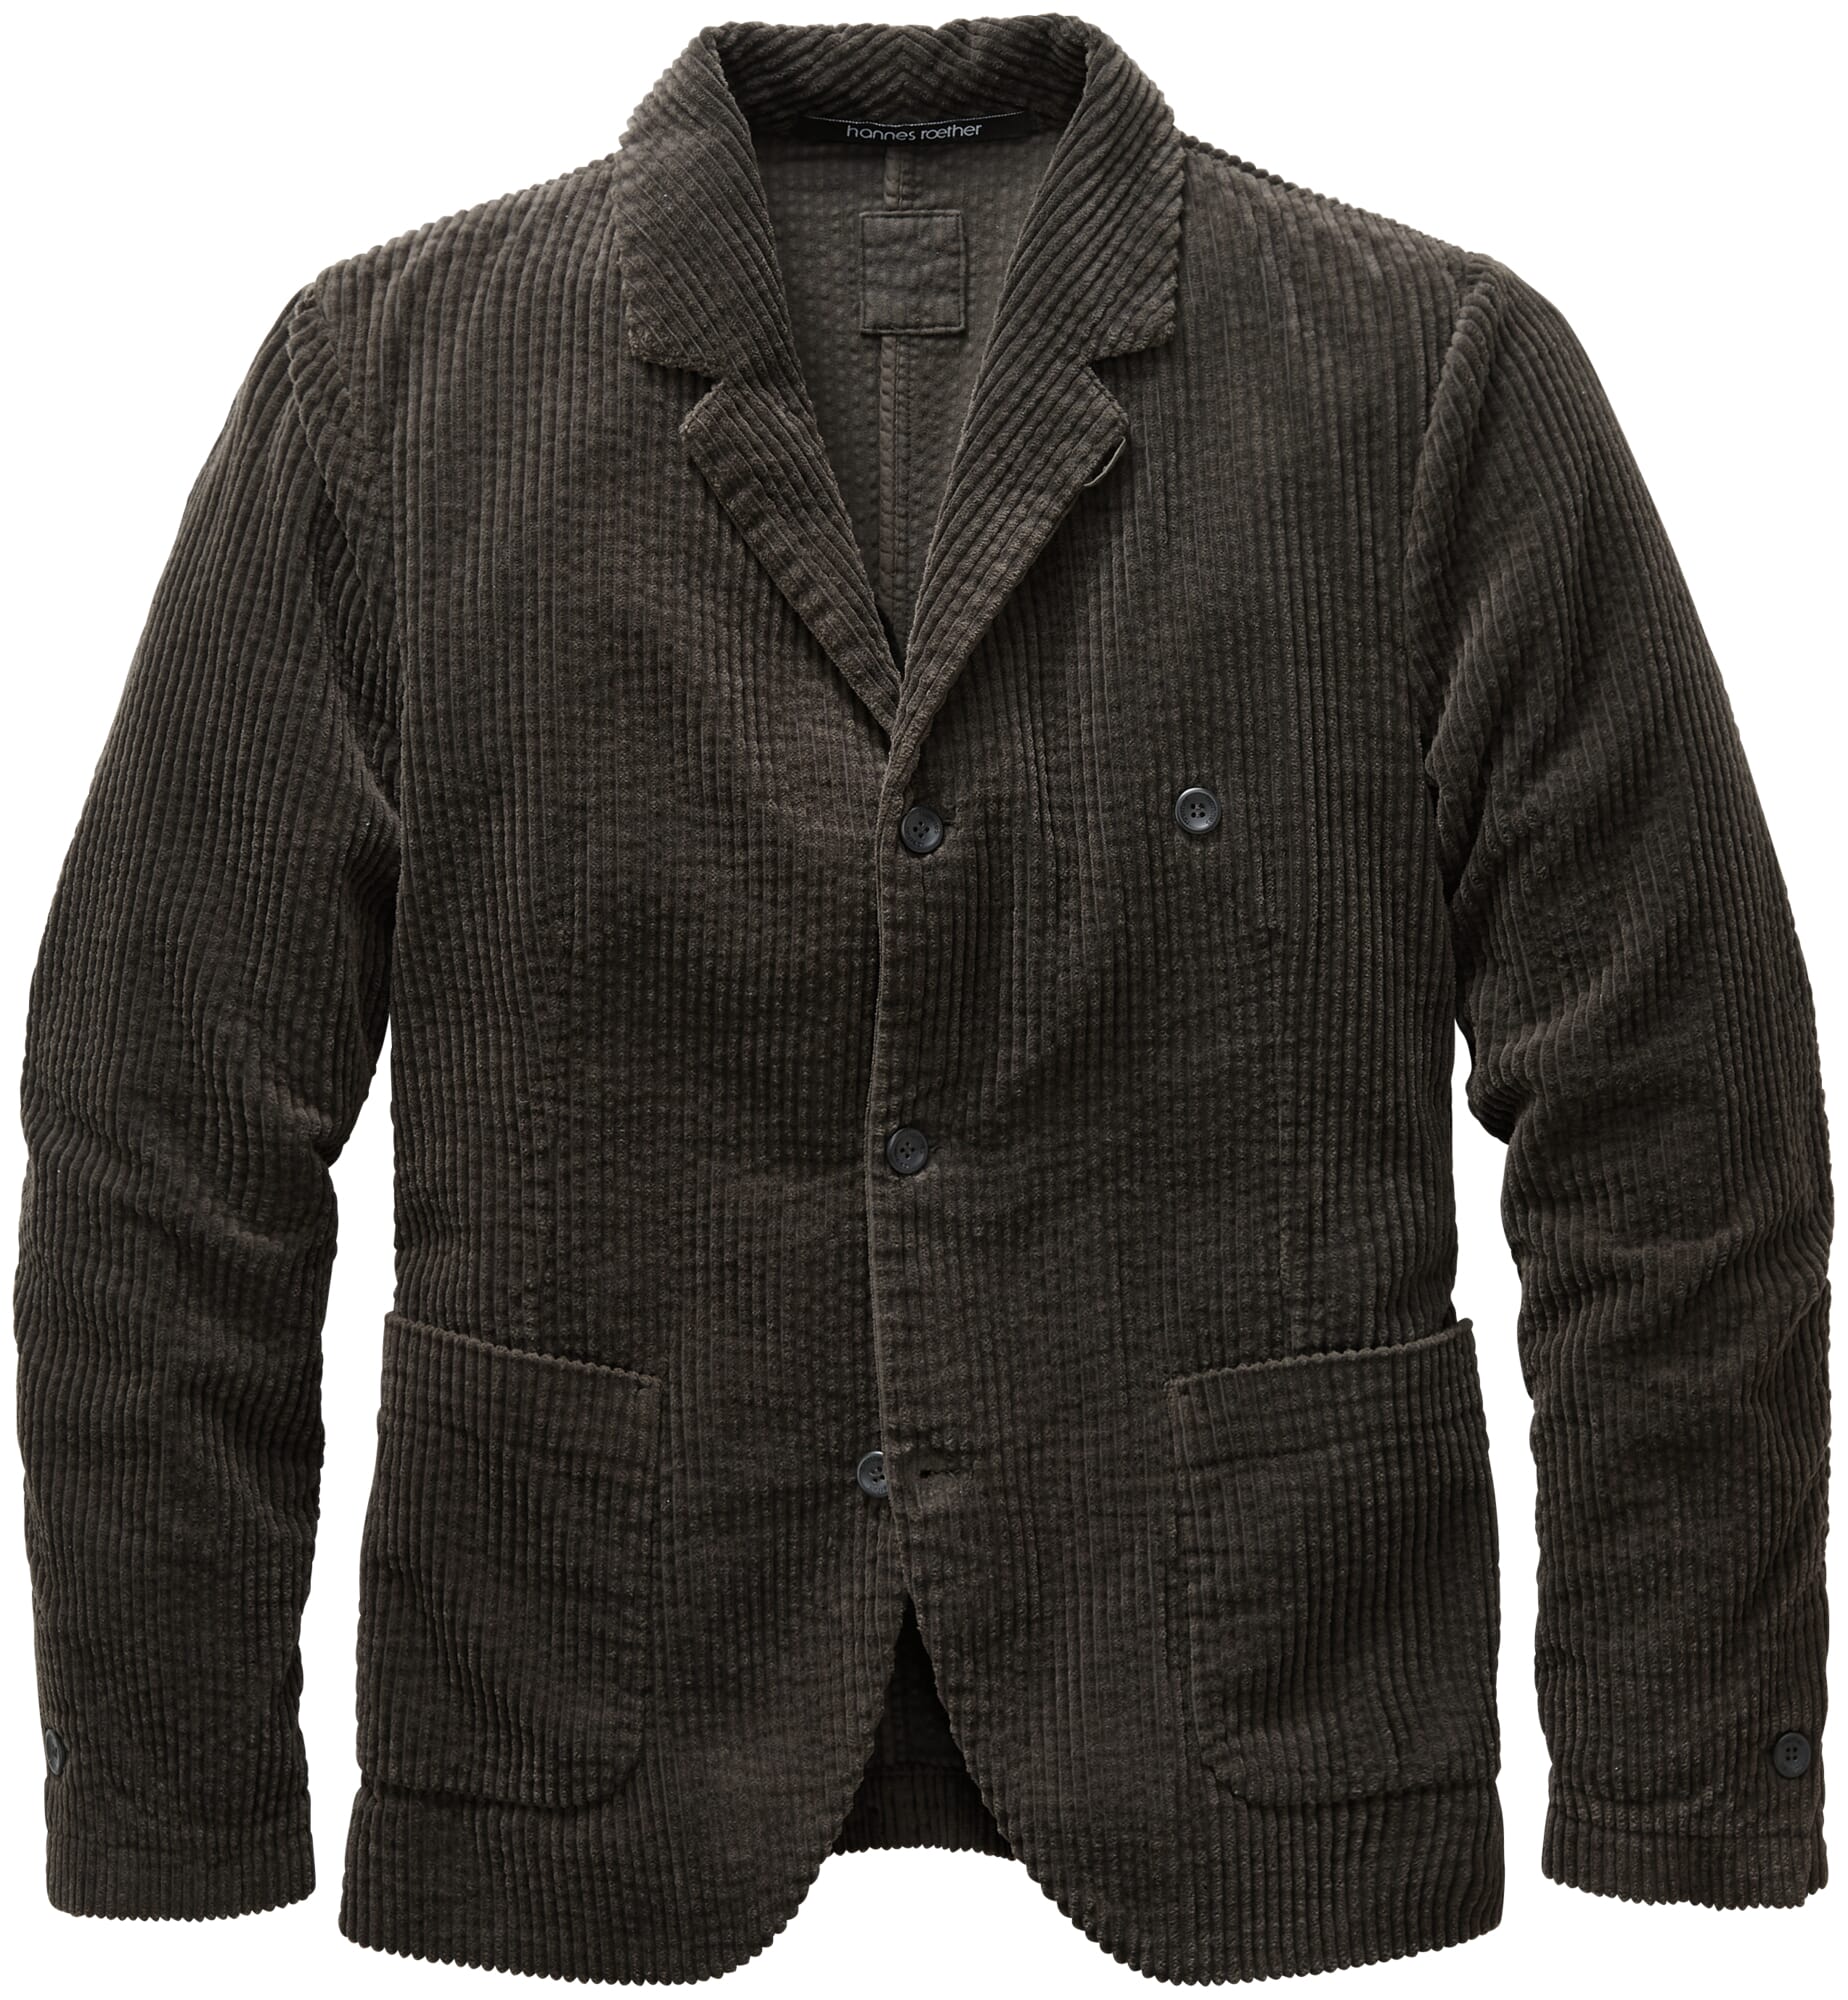 koppeling Trechter webspin Portret Men's corduroy jacket, Graphite | Manufactum